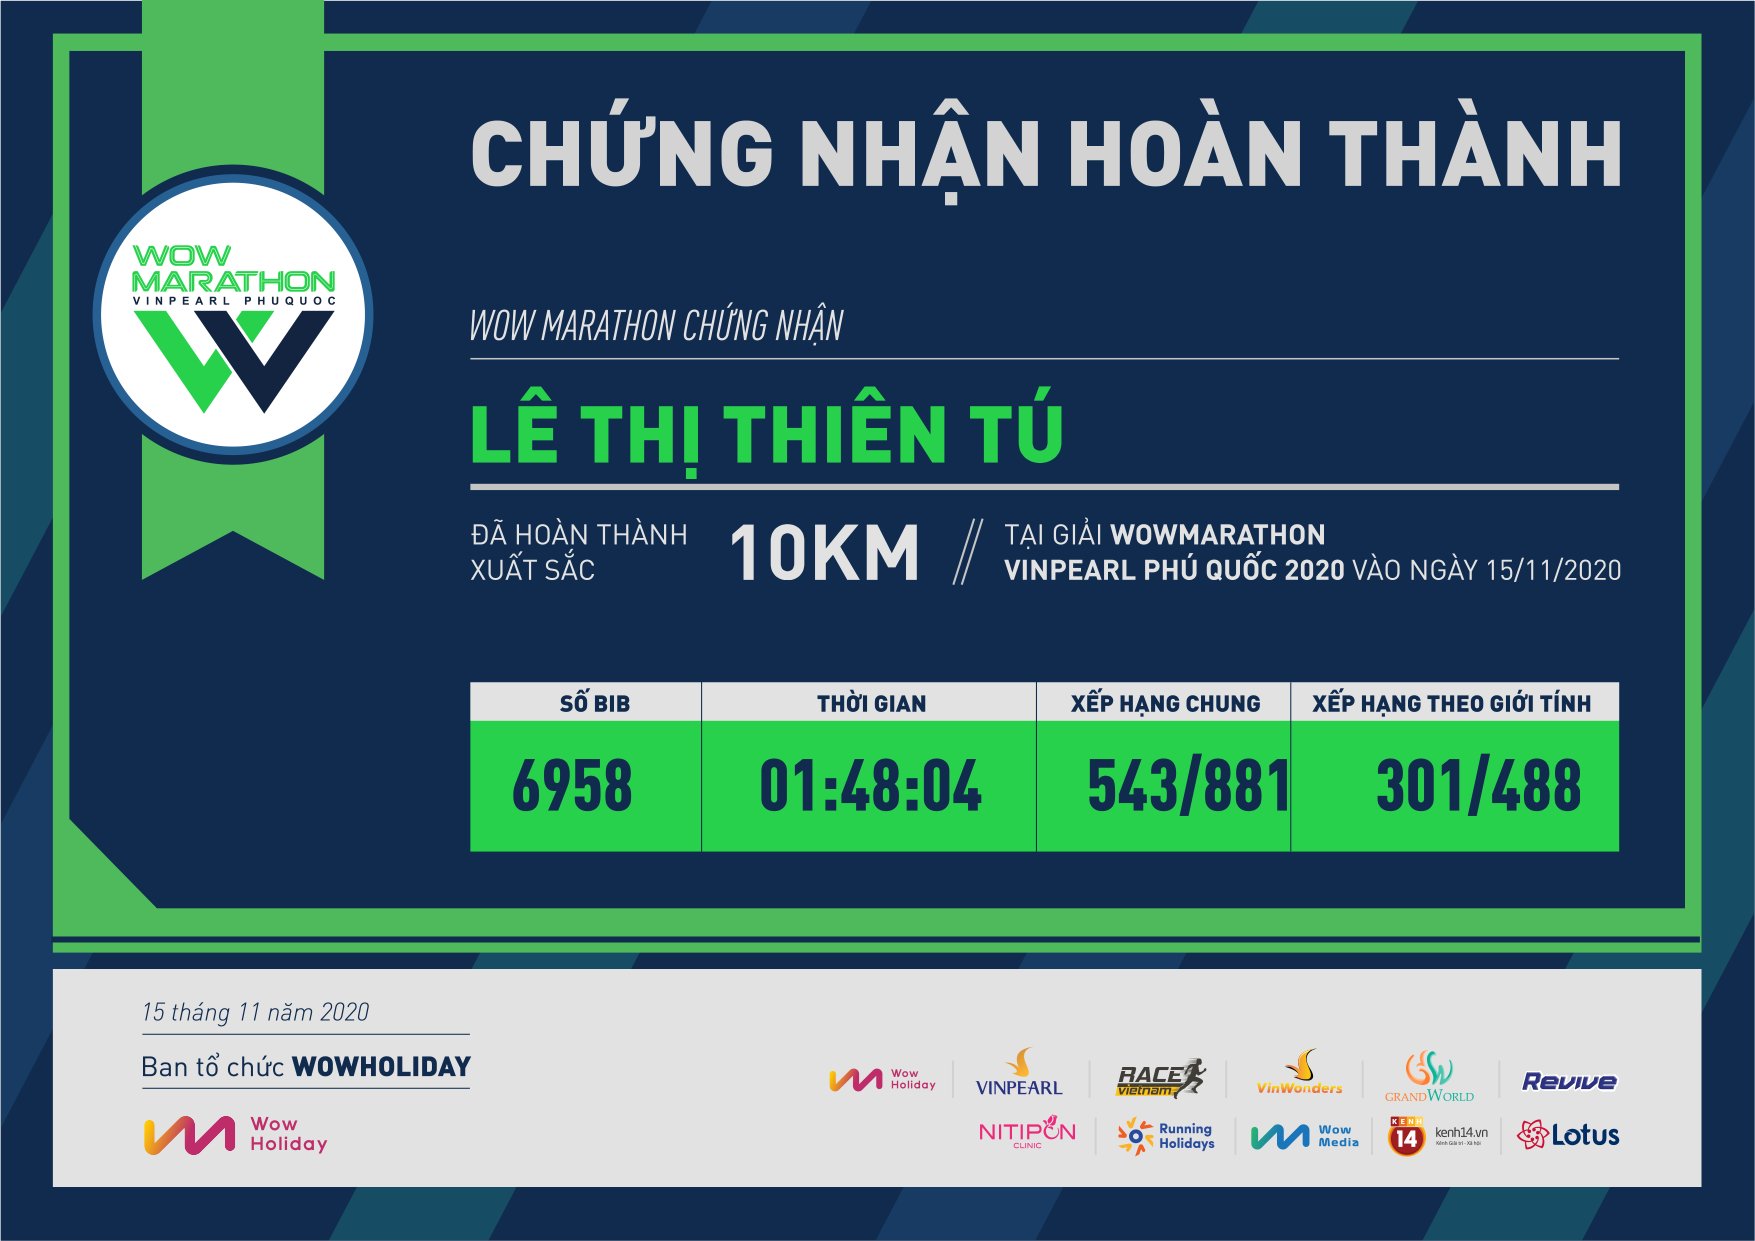 6958 - Lê Thị Thiên Tú